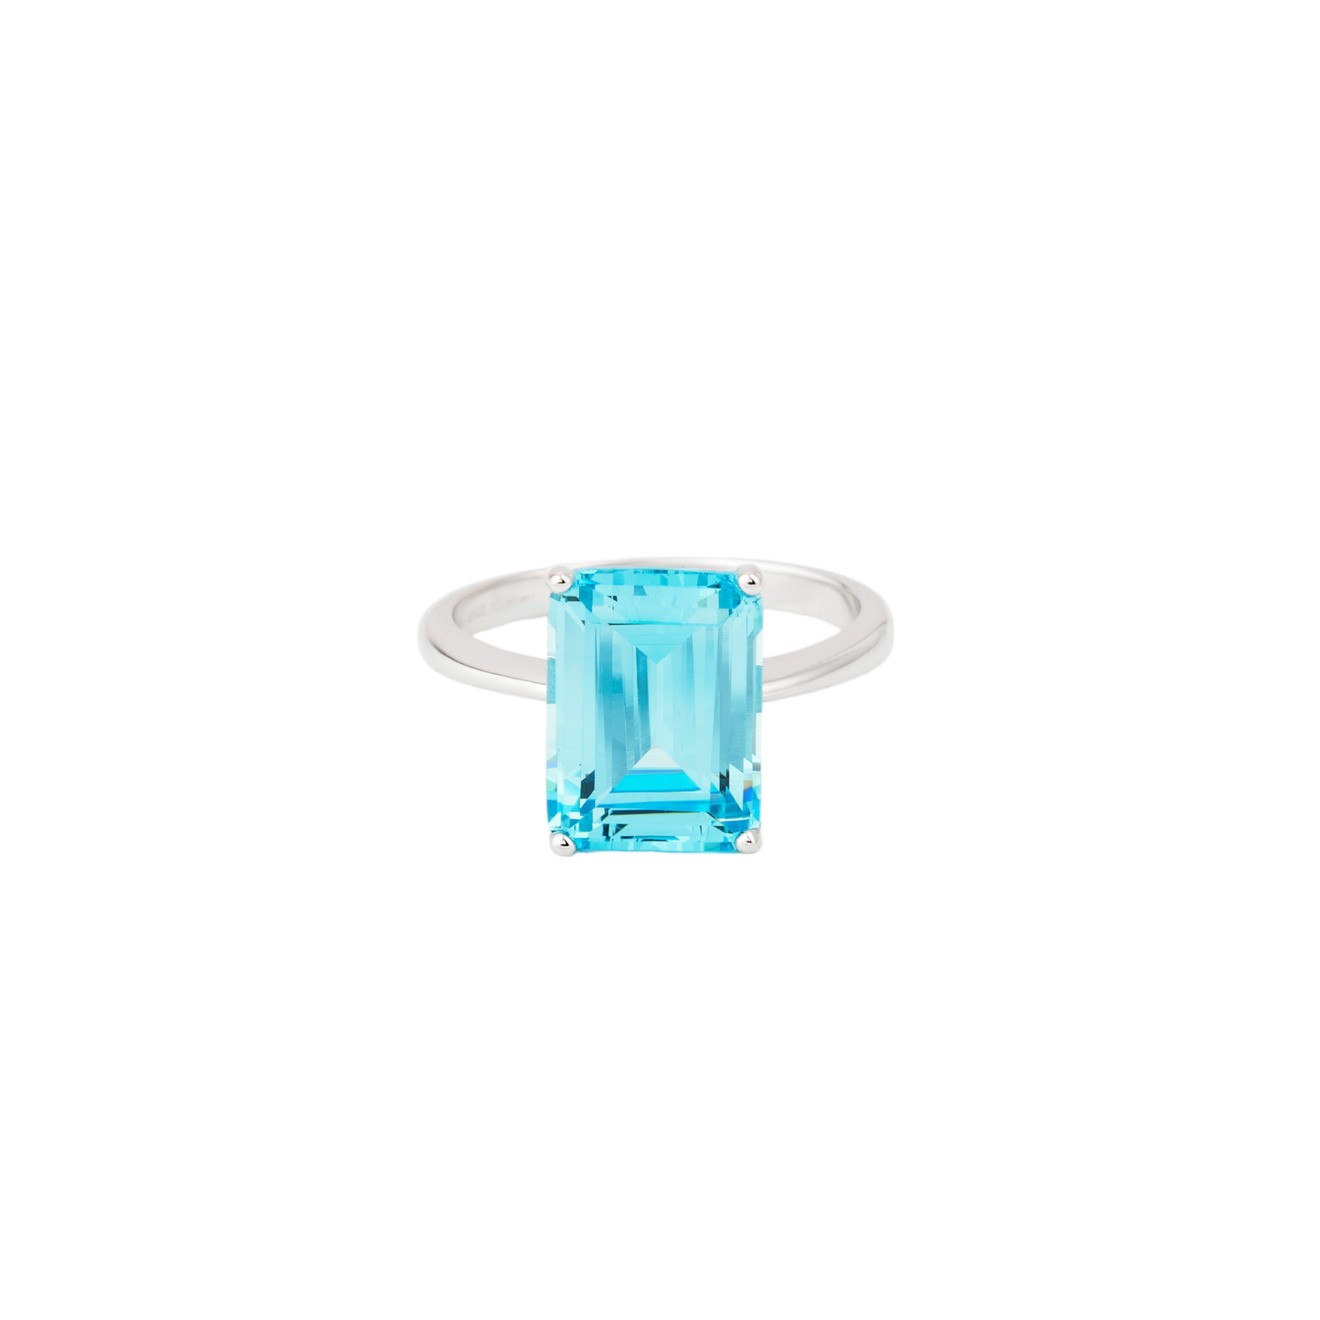 Holy Silver Кольцо из серебра с голубым прямоугольным камнем lisa smith золотистое кольцо с молочным прямоугольным камнем